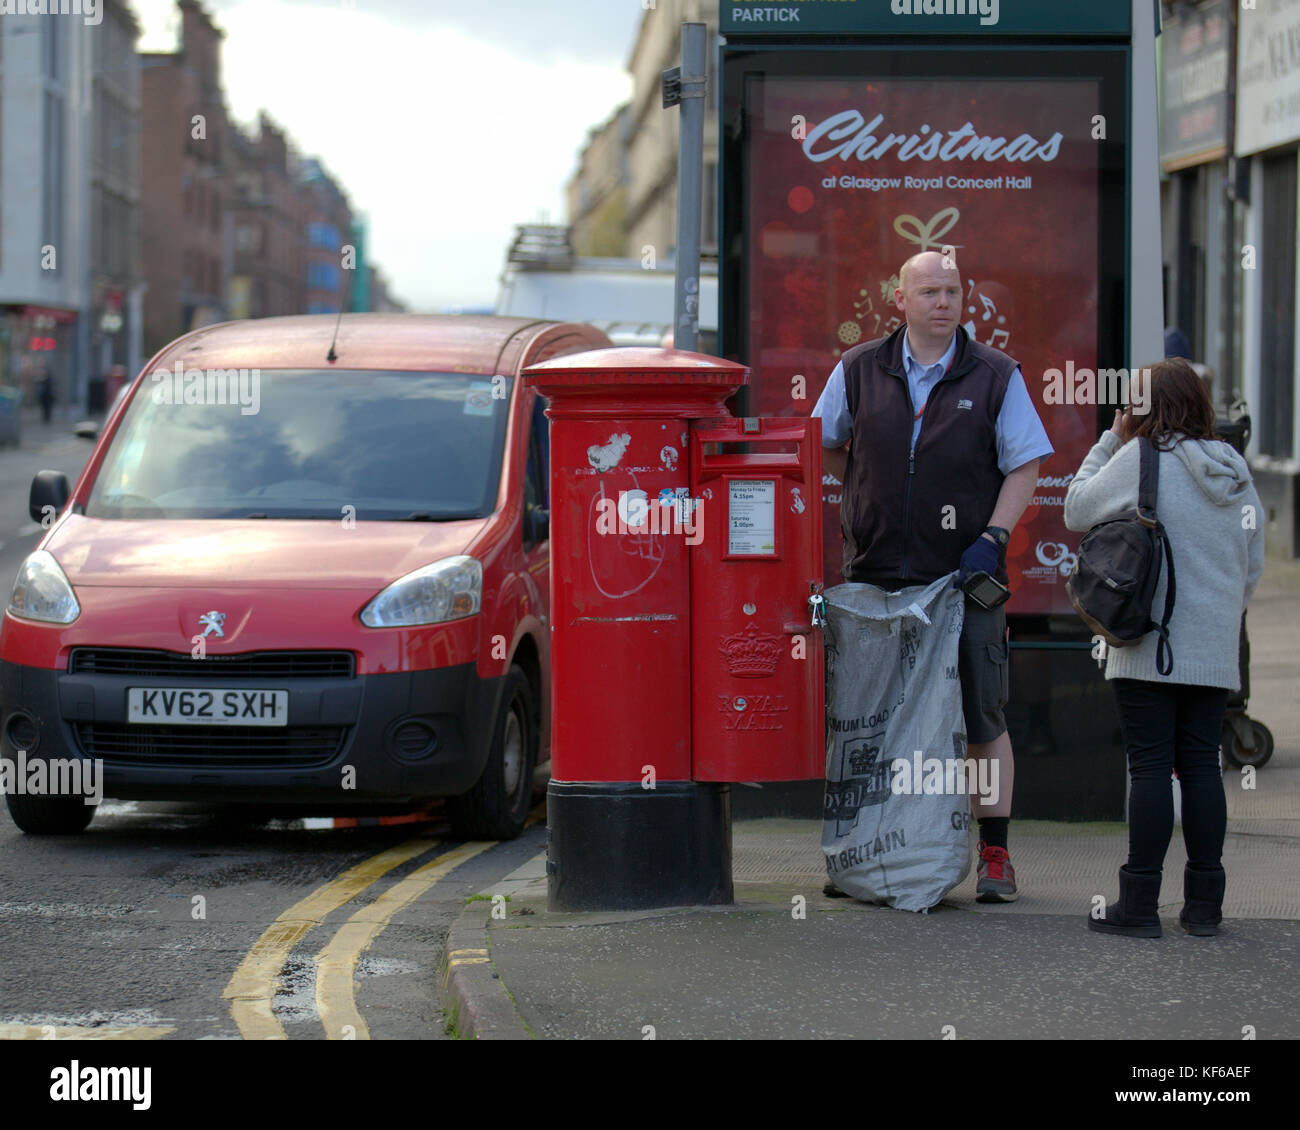 Royal Mail postman la collecte des lettres street red postbox van de parler au client de l'affiche de Noël Banque D'Images